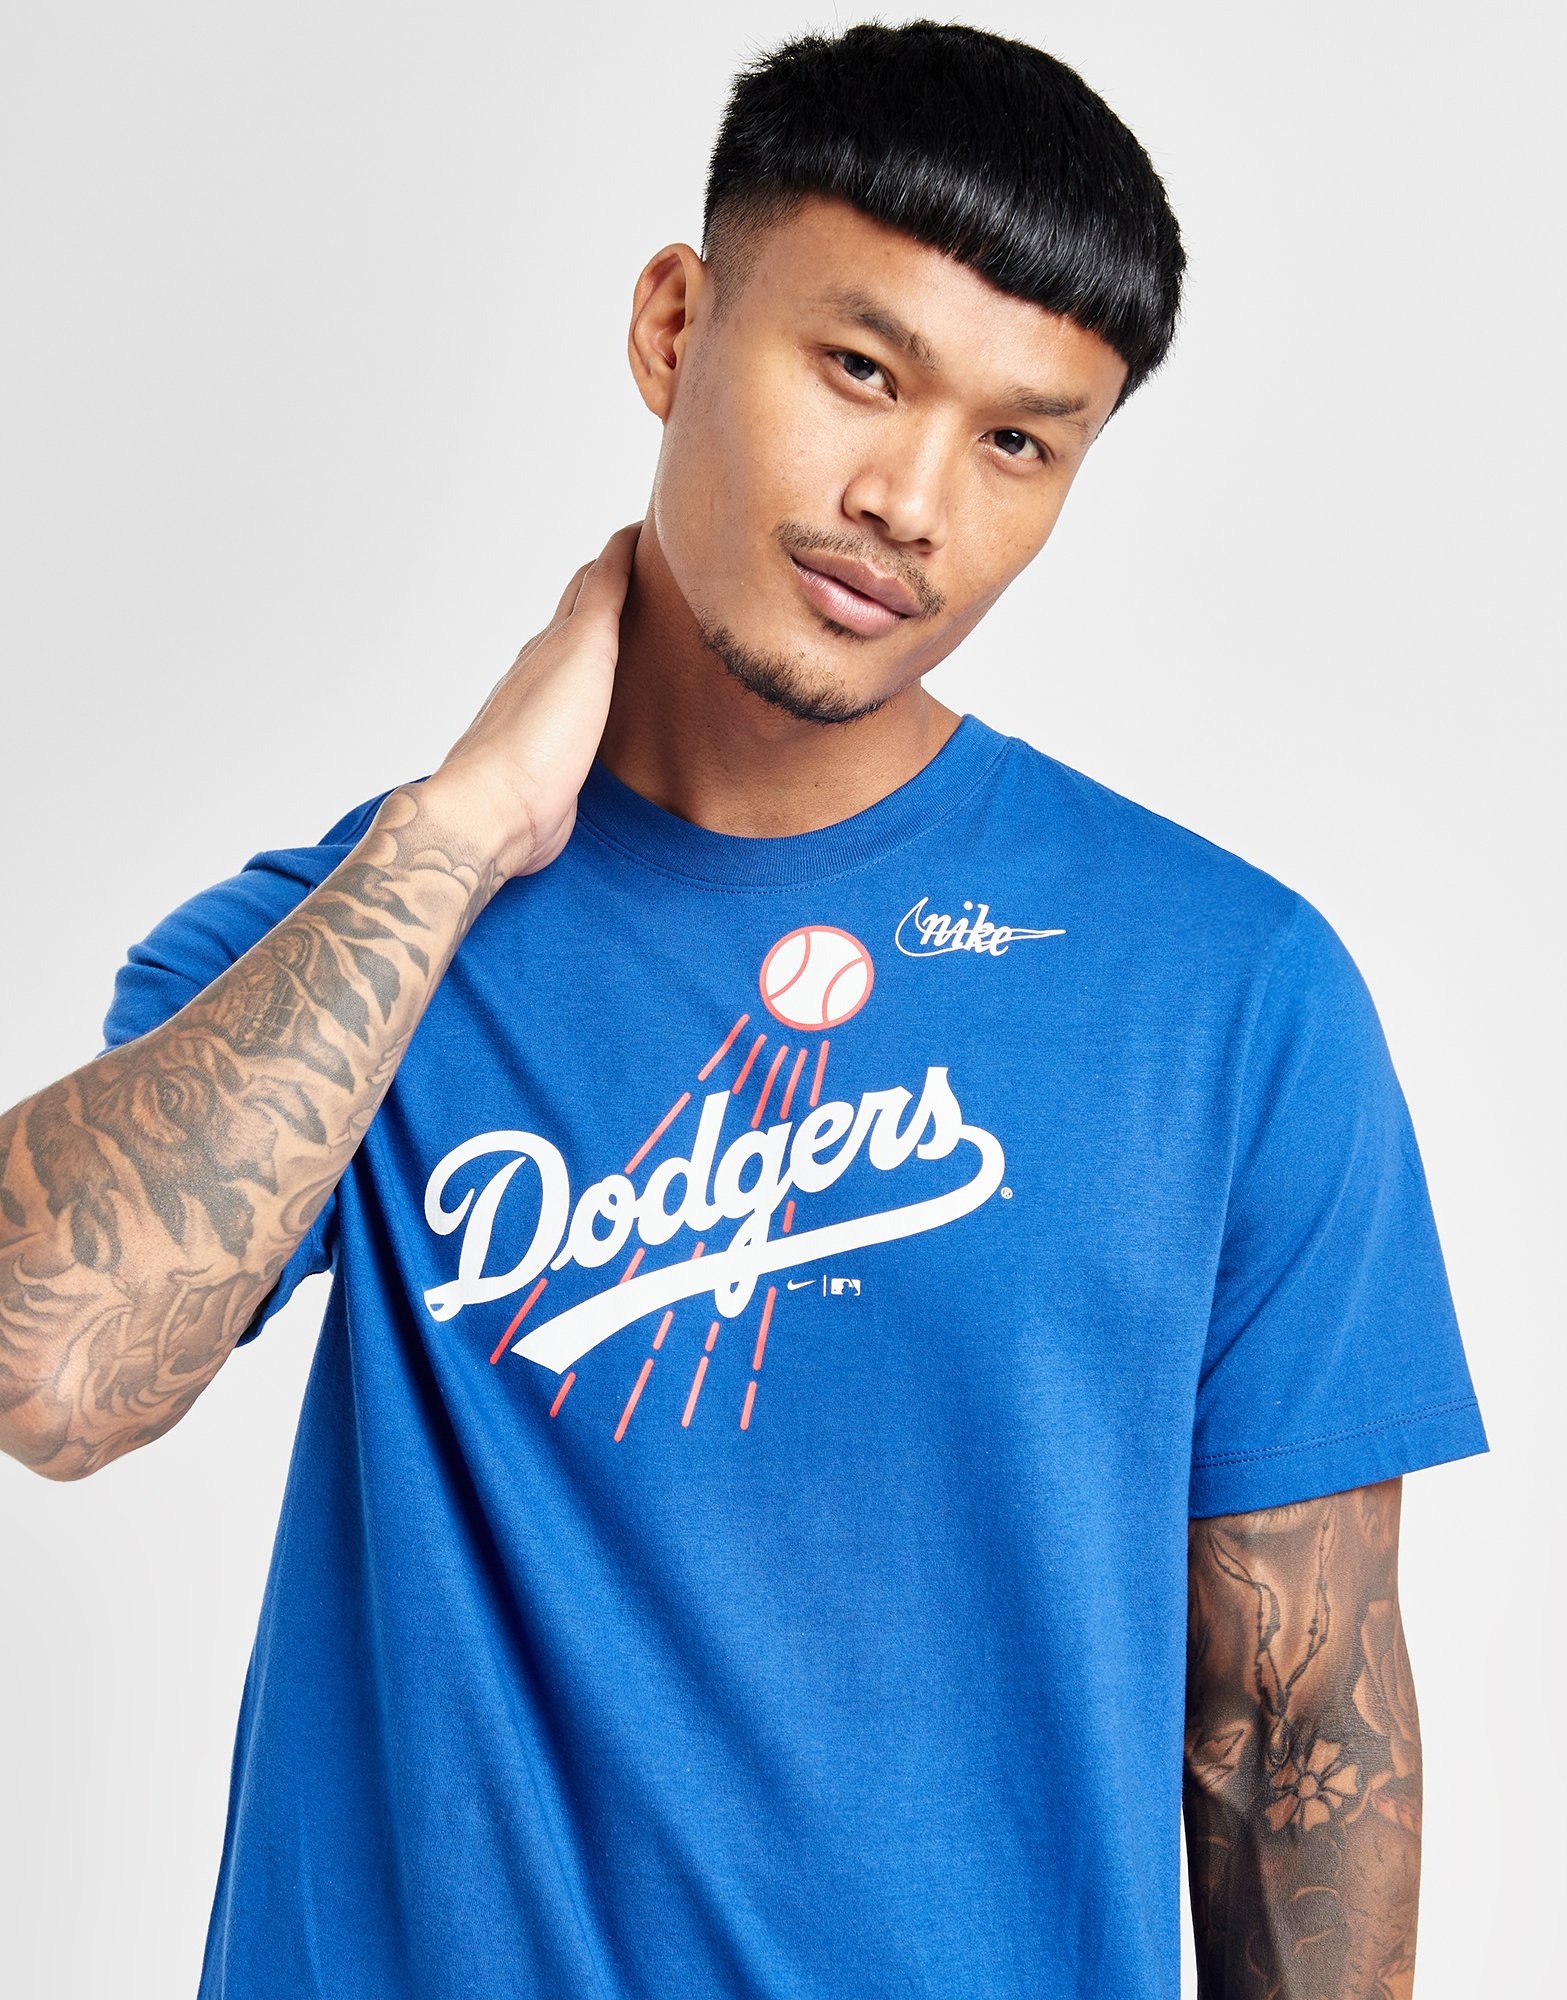 Los Angeles Dodgers Hoodie sweatshirt S, M, L, XL, 2X, 3X NEW!